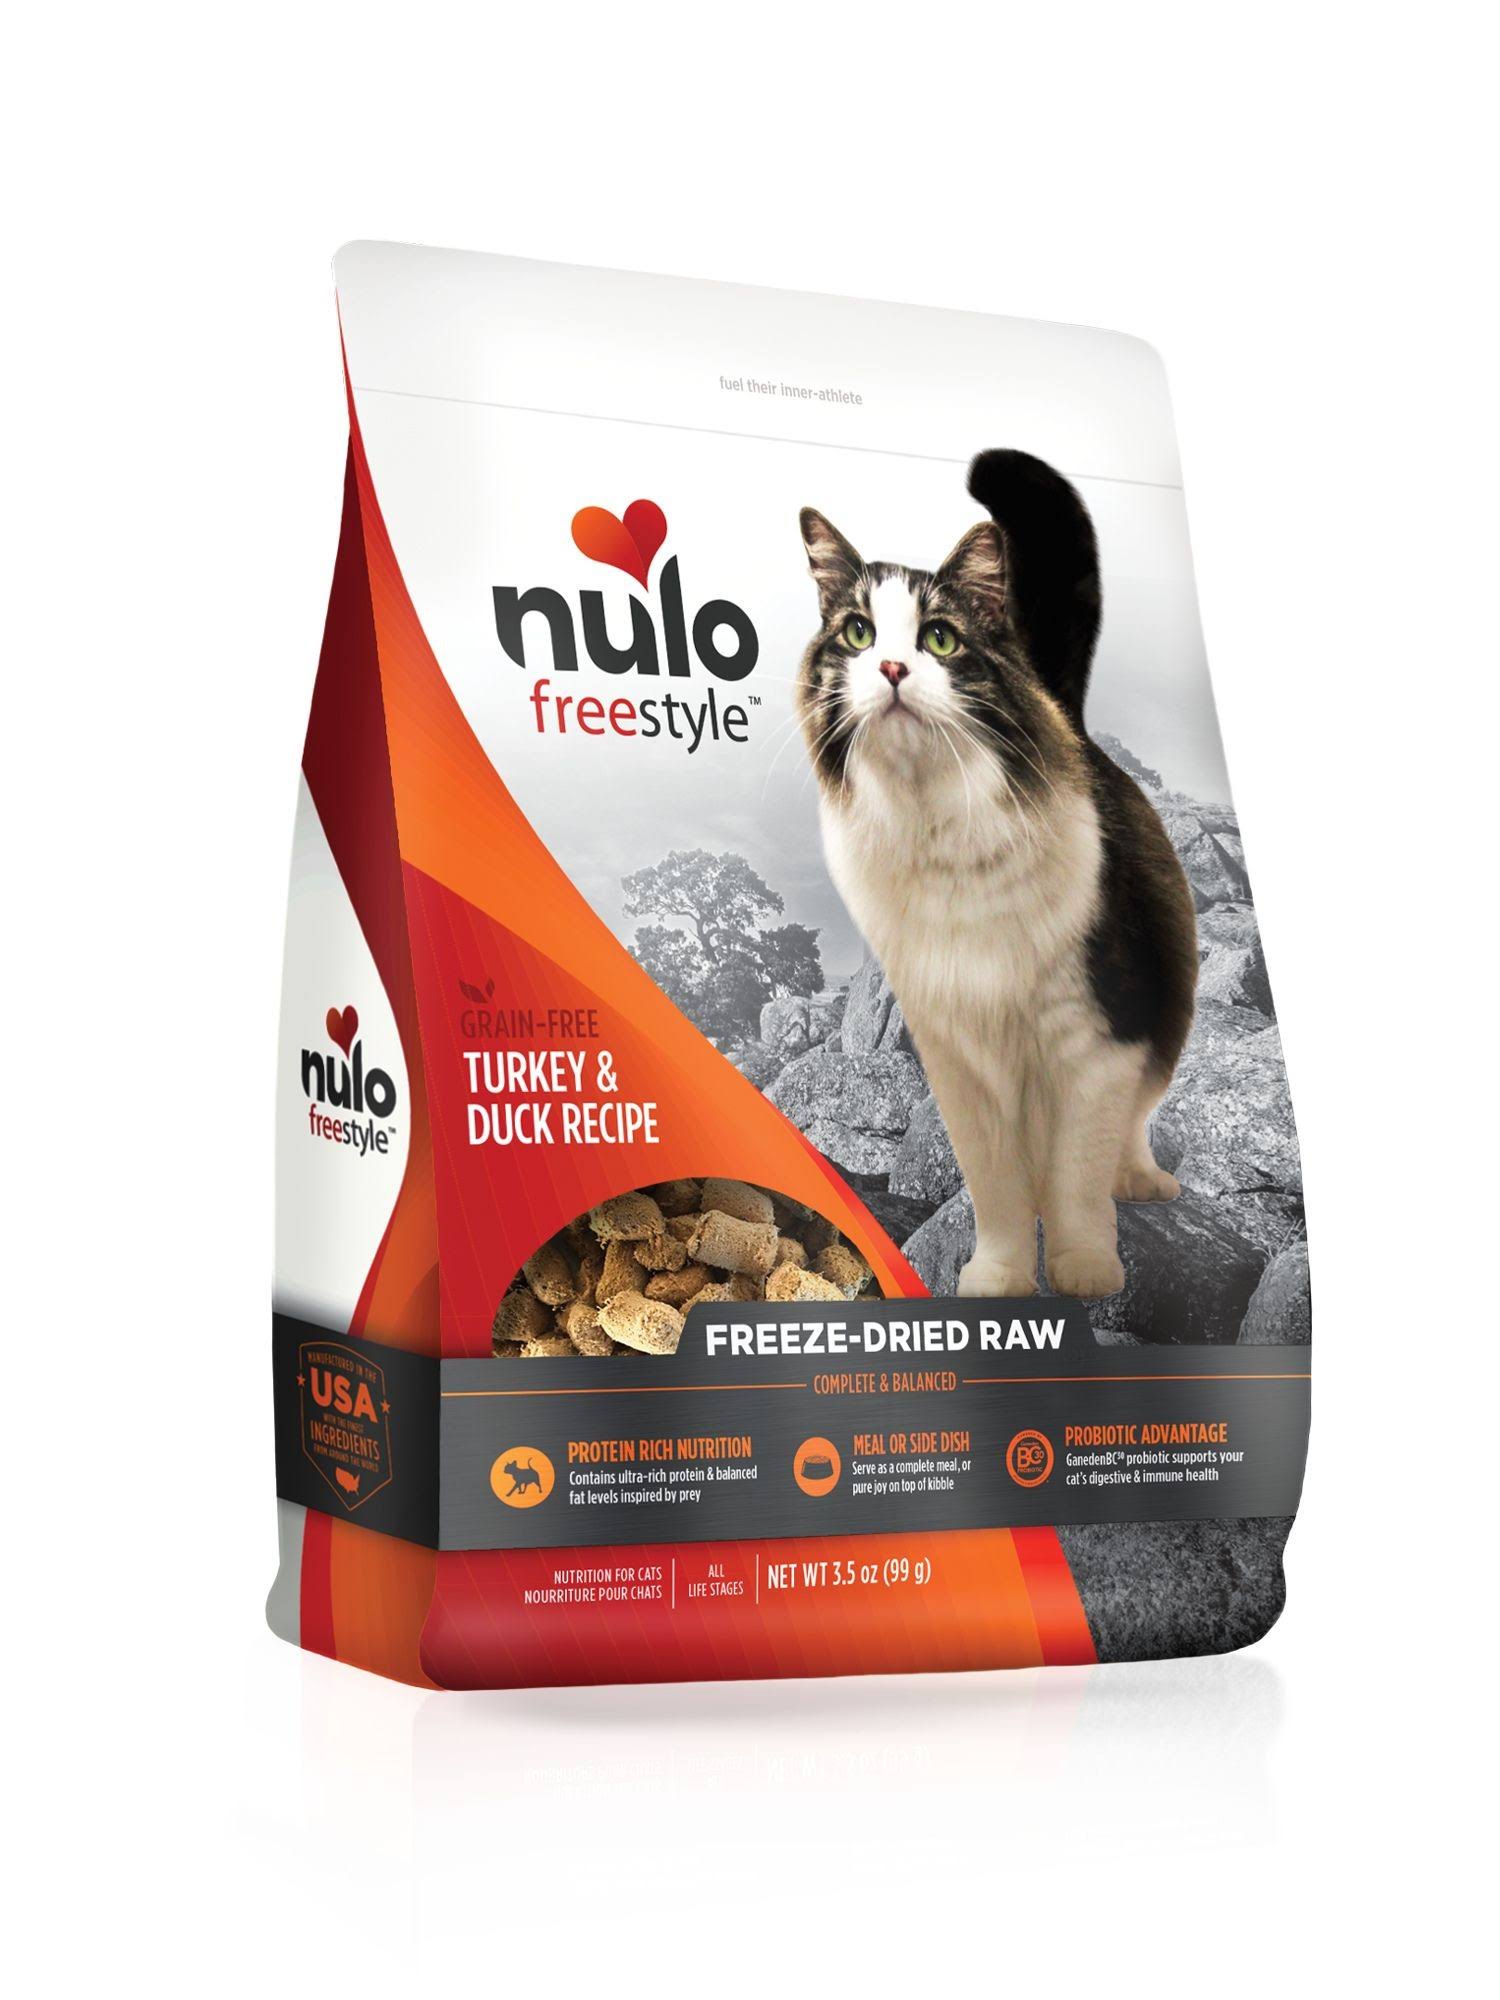 Nulo Freestyle Turkey & Duck Freeze-Dried Raw Cat Food, 3.5-oz